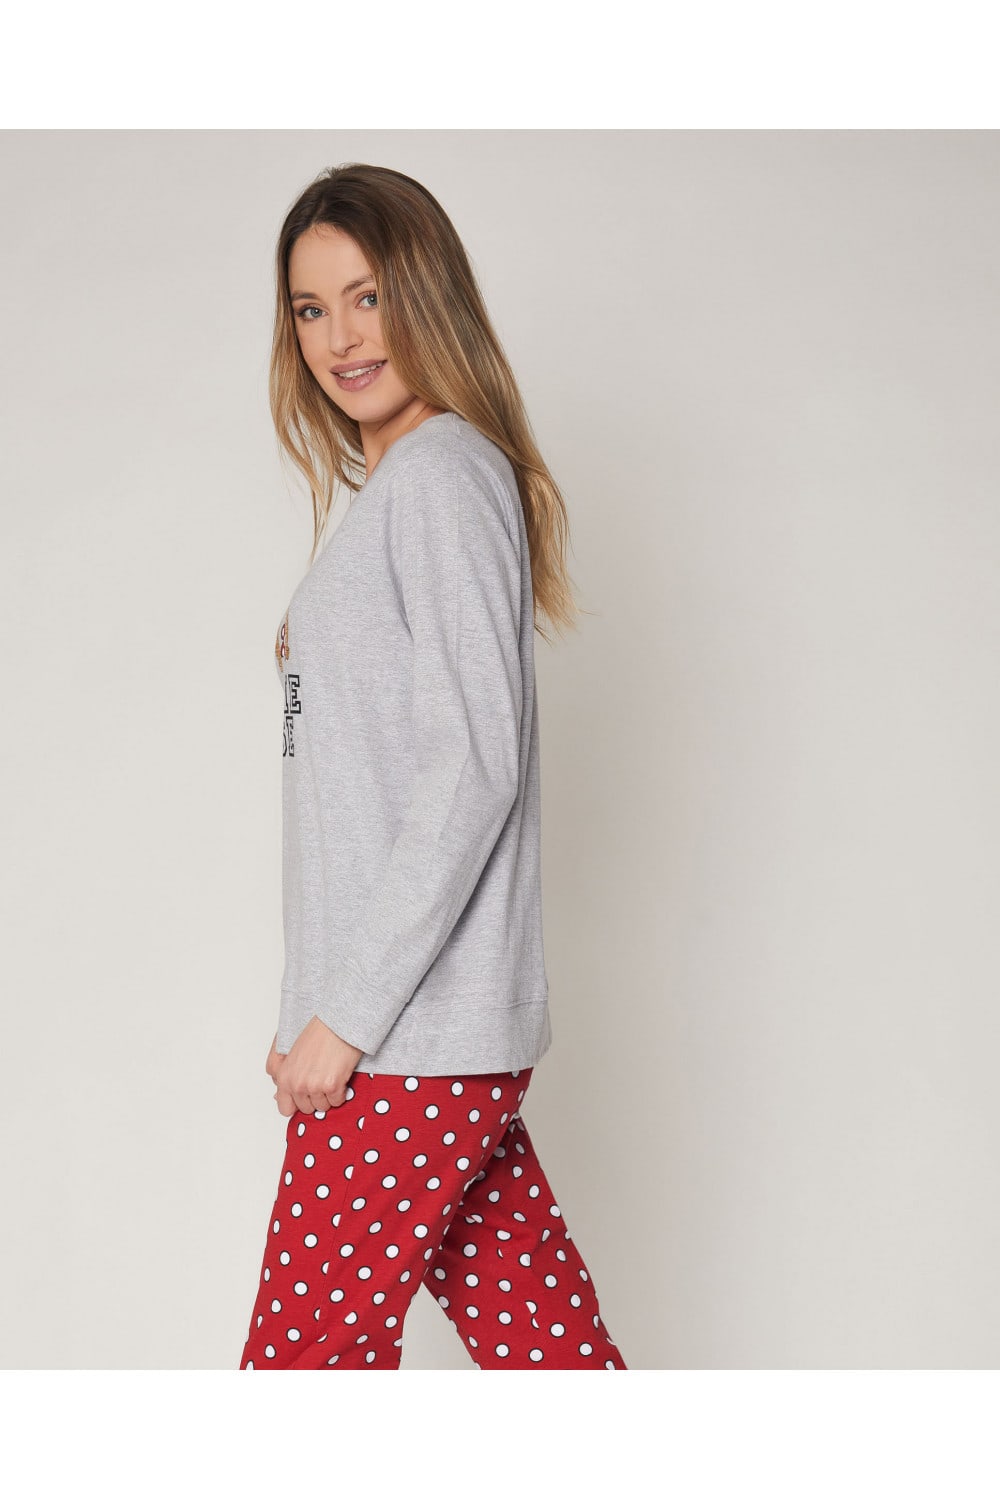 Pijama mujer Disney algodón afelpado - PIJAMAS LARGOS - Tiendas lenceria